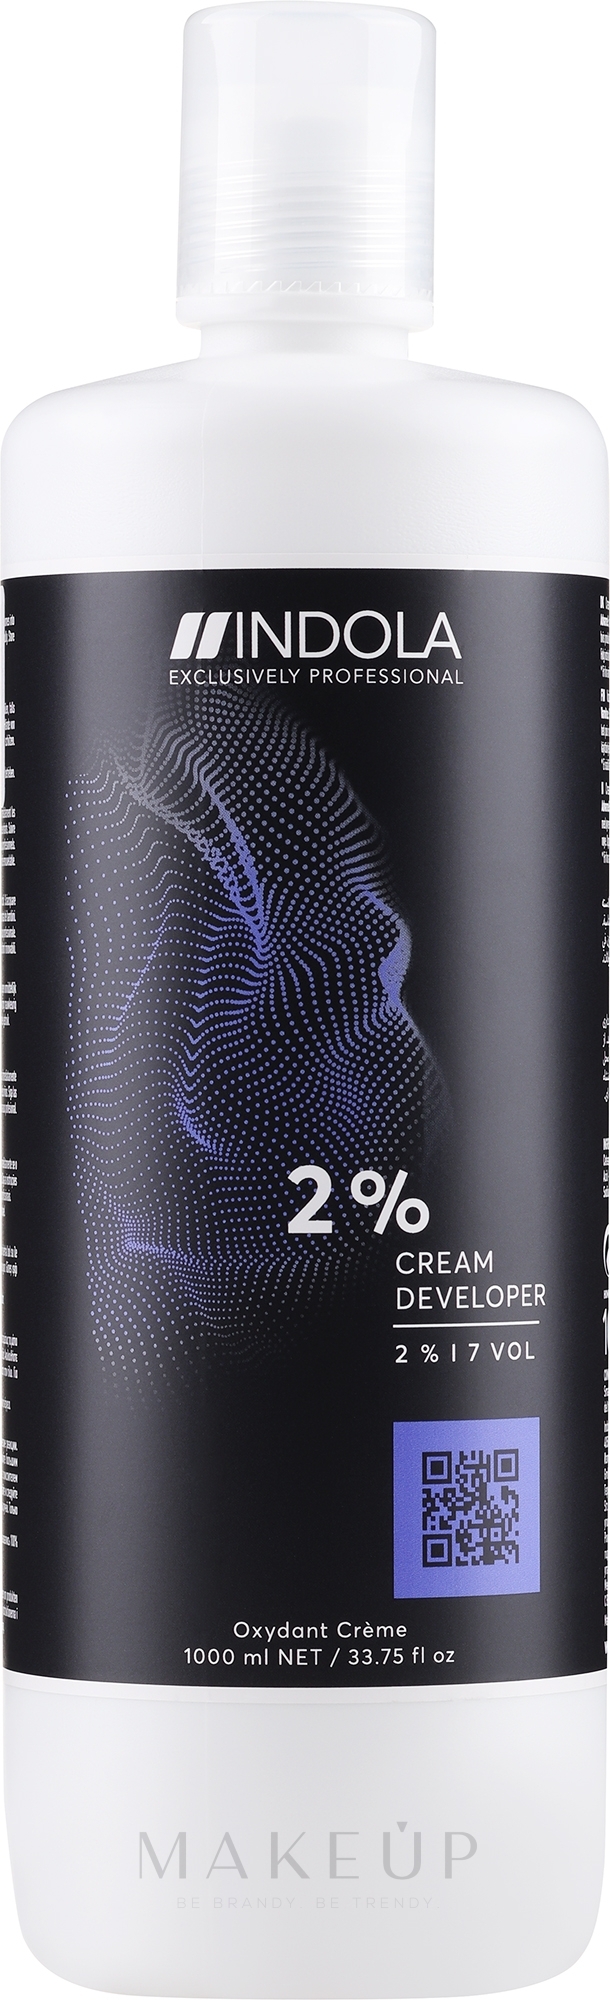 Entwicklerlotion 2% - Indola Profession Cream Developer 2% 7 vol — Bild 1000 ml